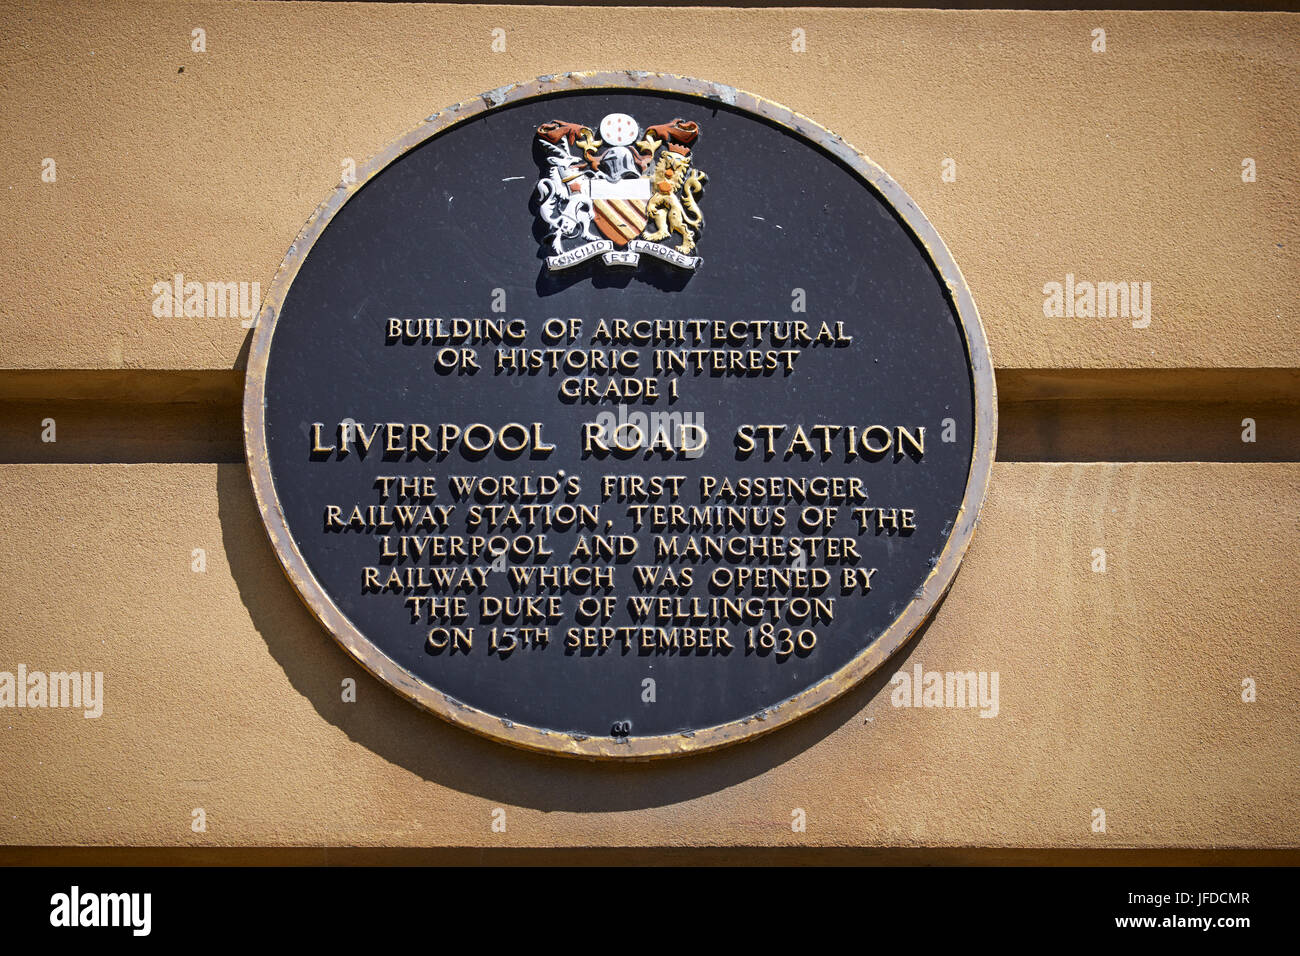 Liverpool Road ehemaligen Bahn Bahnhof Liverpool Manchester Railway weltweit ersten inter-City-Passagier-Bahnhof aus dem Jahr 1830 aufgeführt Grade 1 Stockfoto